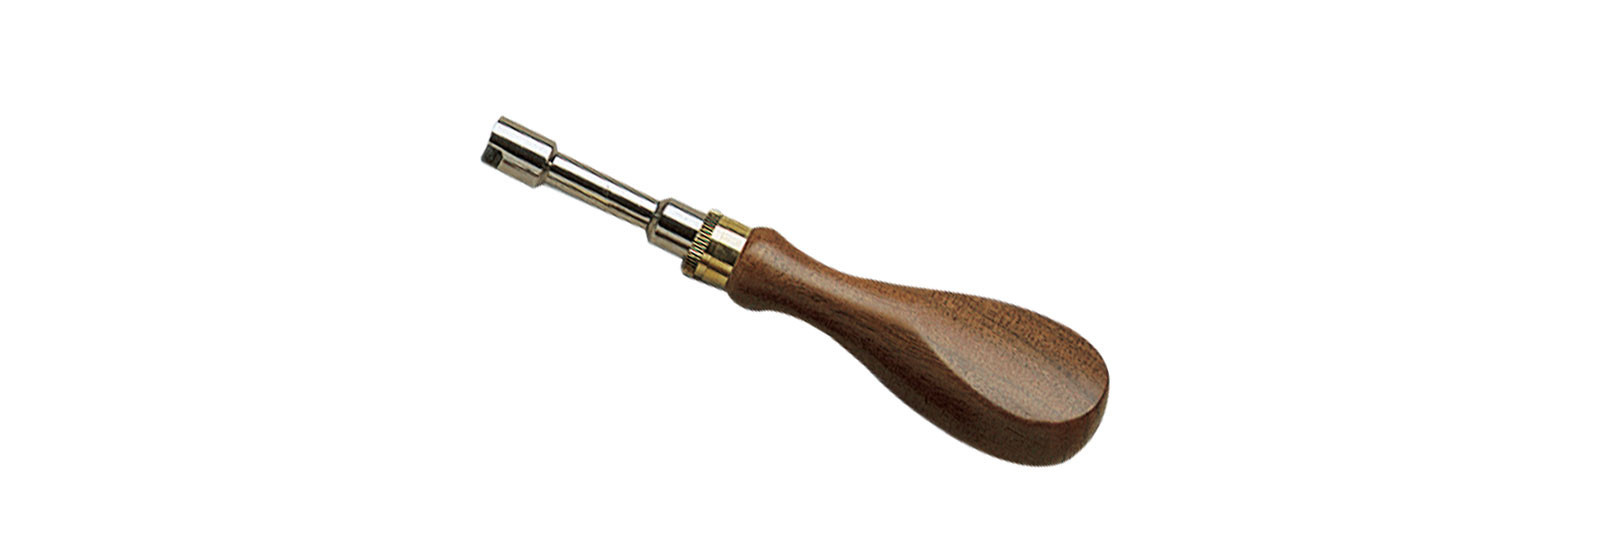 Chiave con manico in legno per revolver